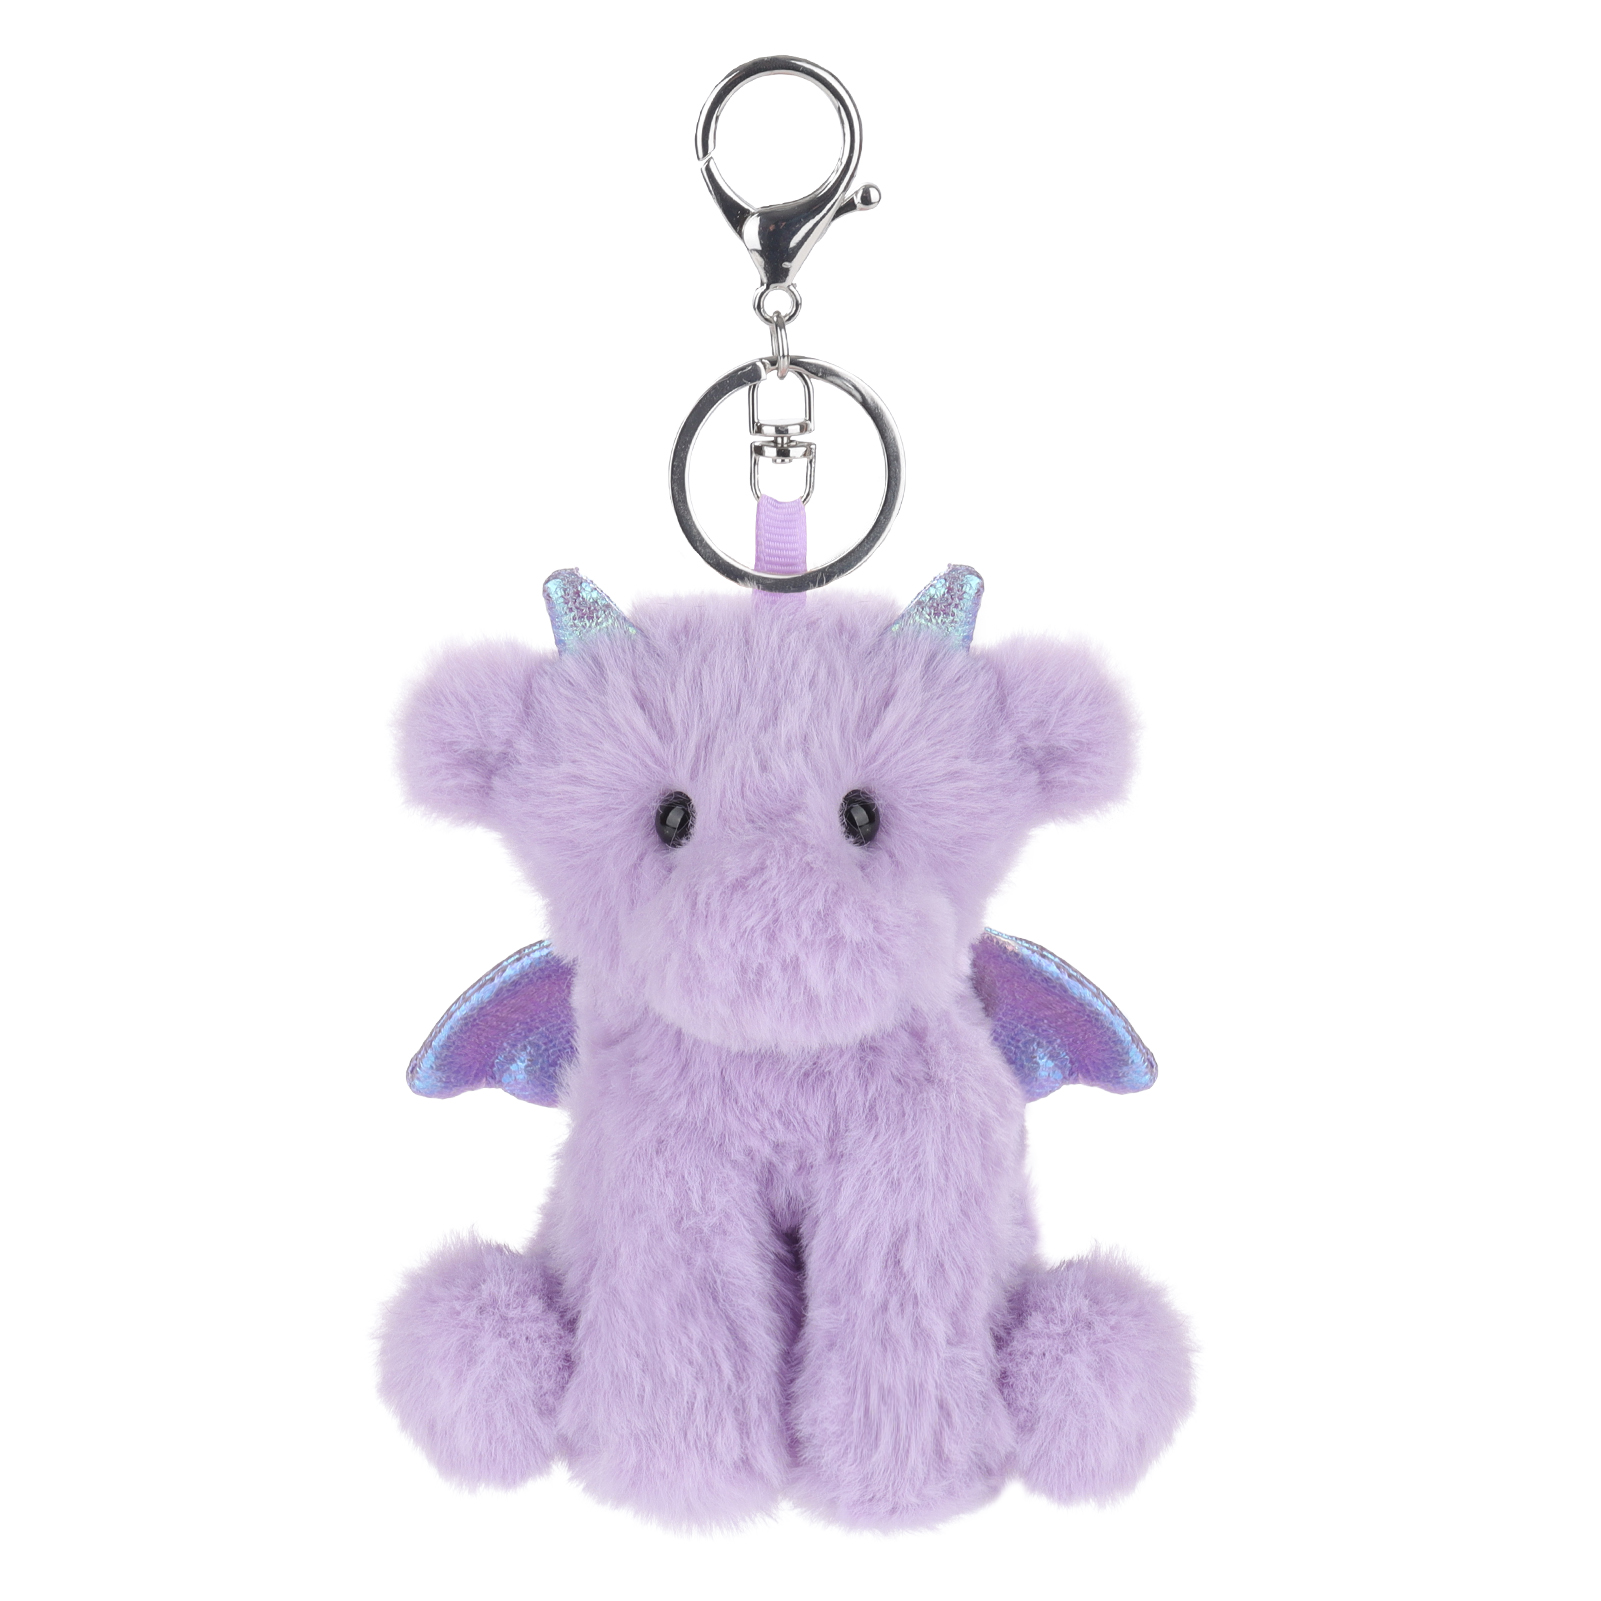 Apricot Lamb keychain-purple dragon Stuffed Animal Soft Plush Toys